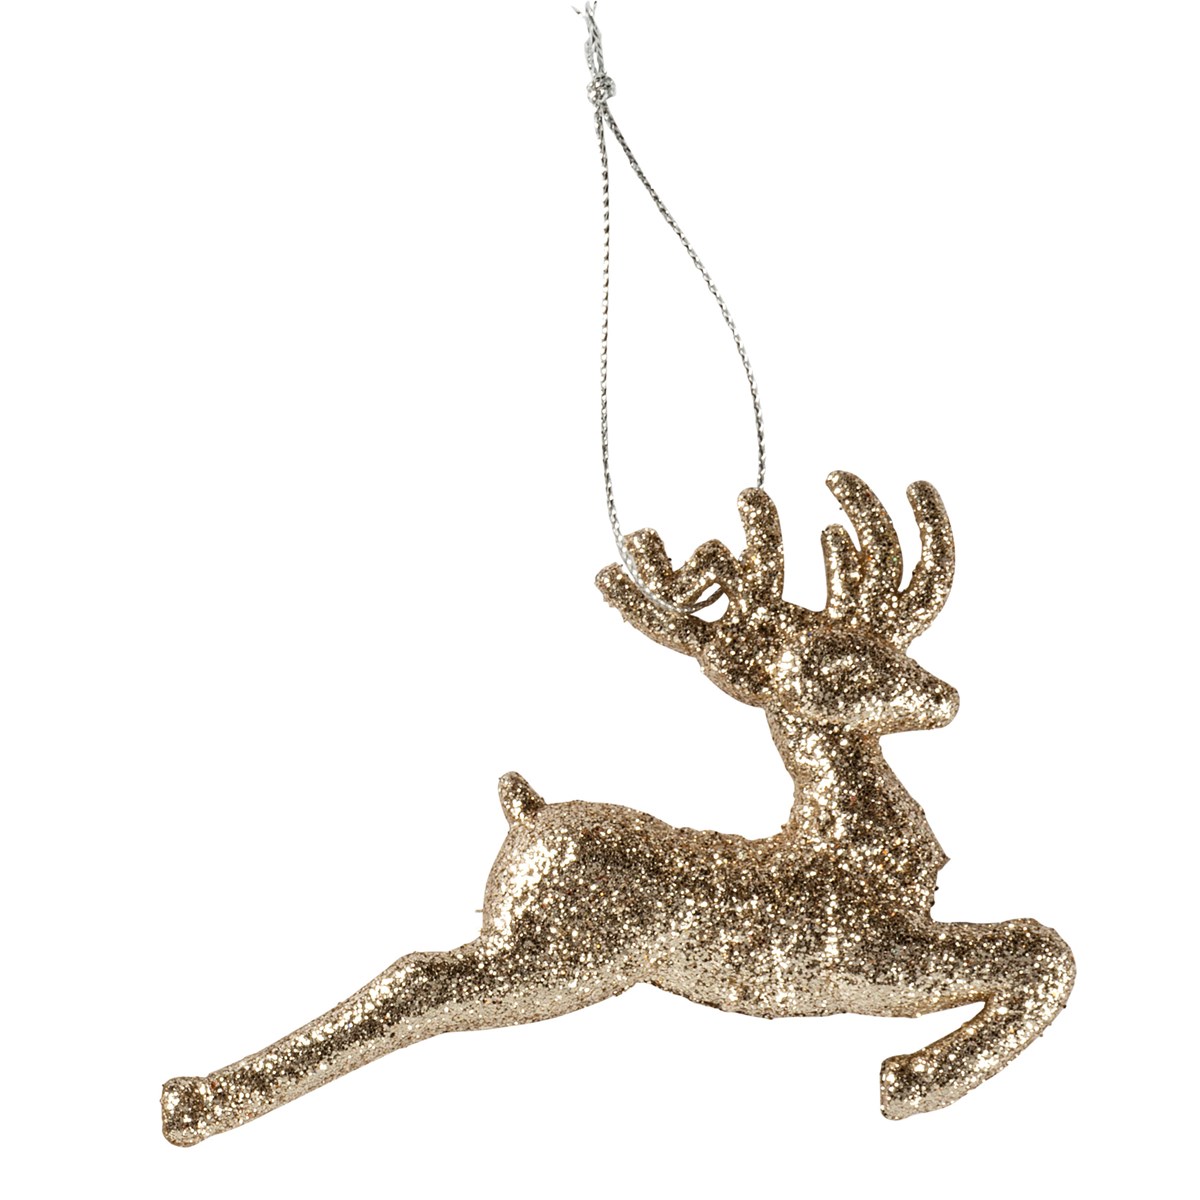 Ornament - Running Deer - 4" x 2.75" x 0.75" - Plastic, Glitter